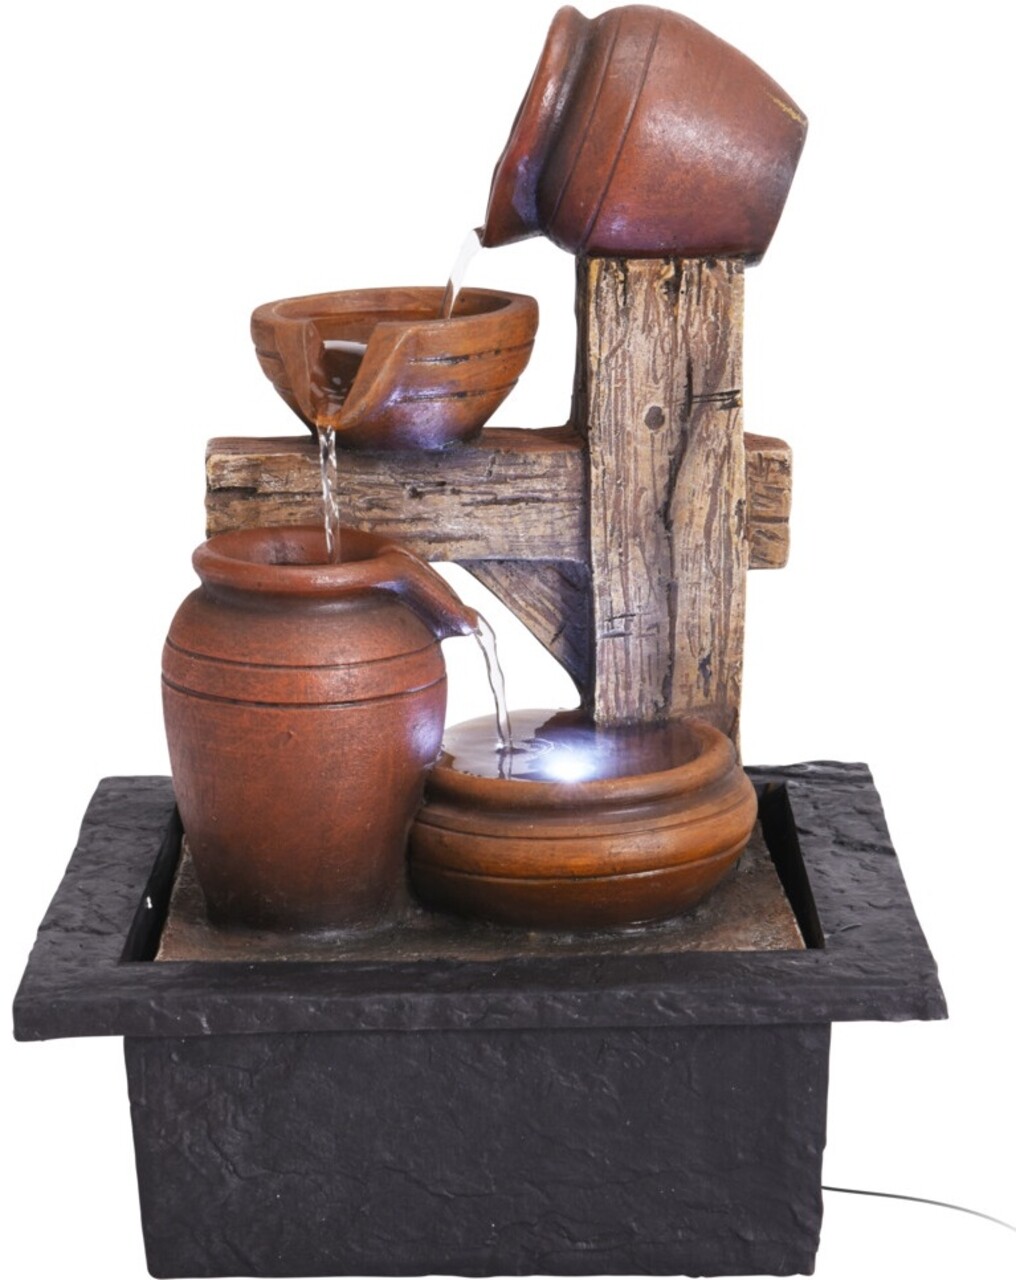 Amphora right Díszkút, 21.5x19x28.8 cm, poliszton, fekete/barna